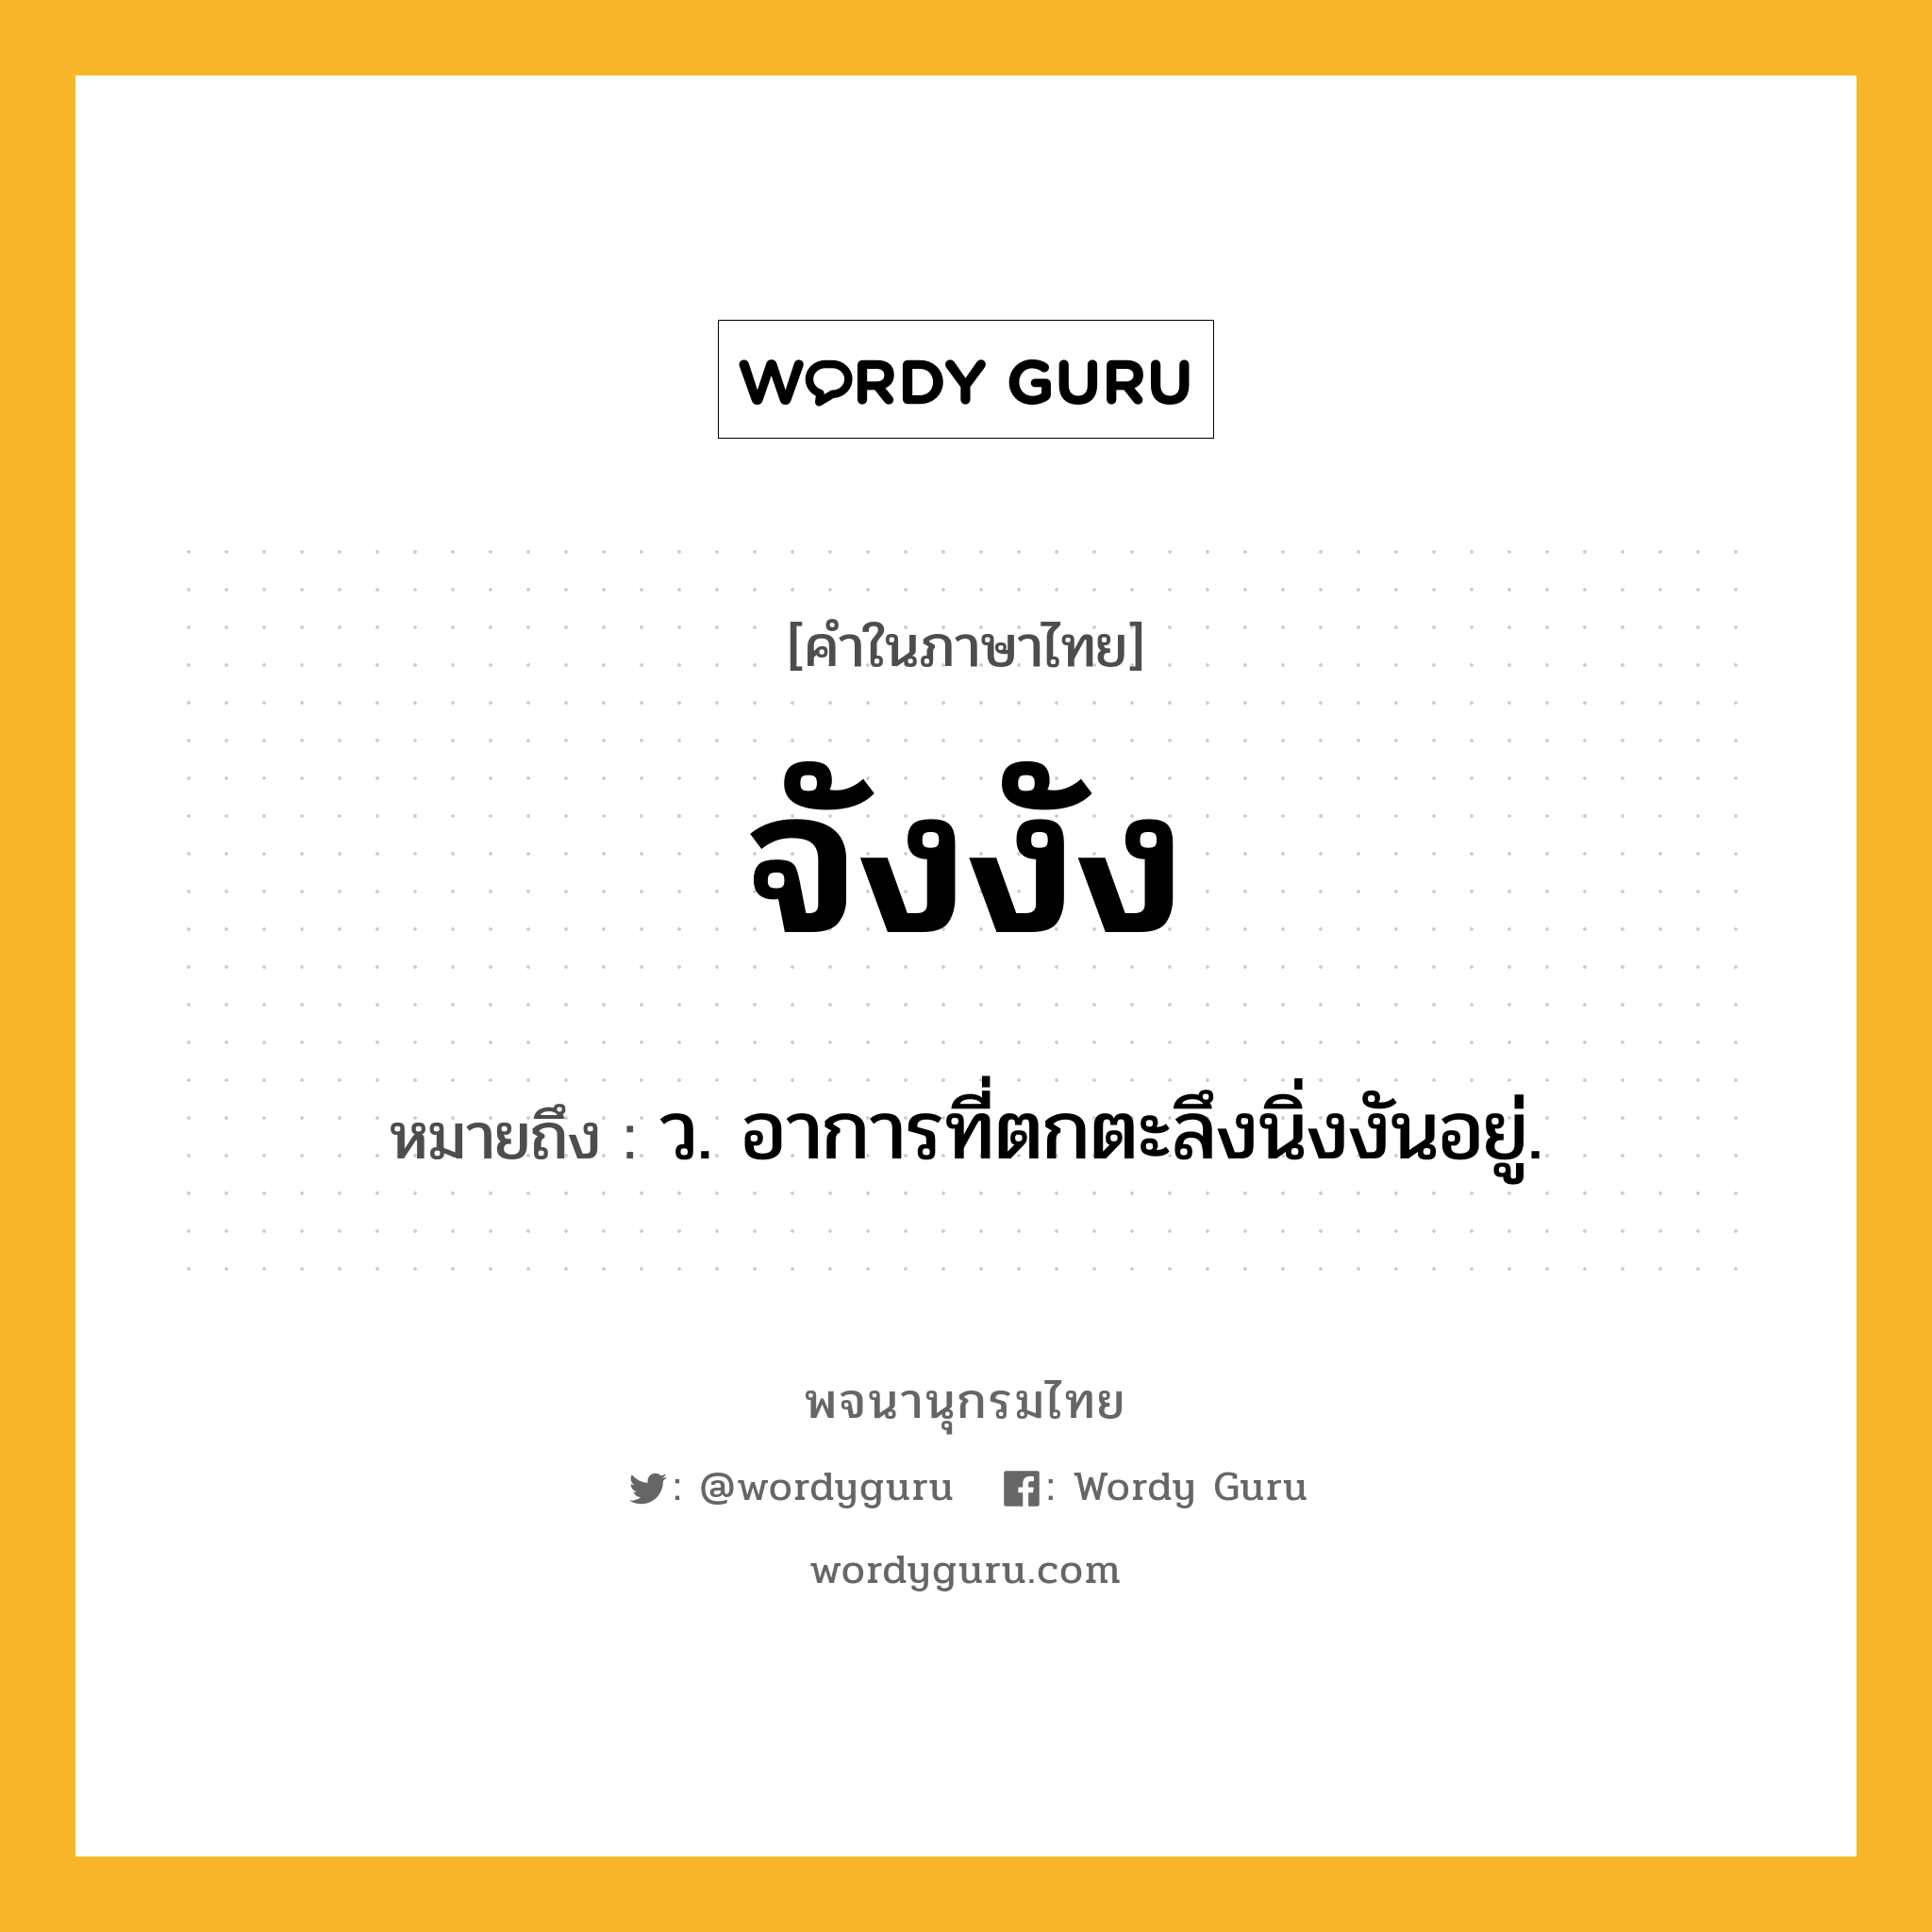 จังงัง ความหมาย หมายถึงอะไร?, คำในภาษาไทย จังงัง หมายถึง ว. อาการที่ตกตะลึงนิ่งงันอยู่.